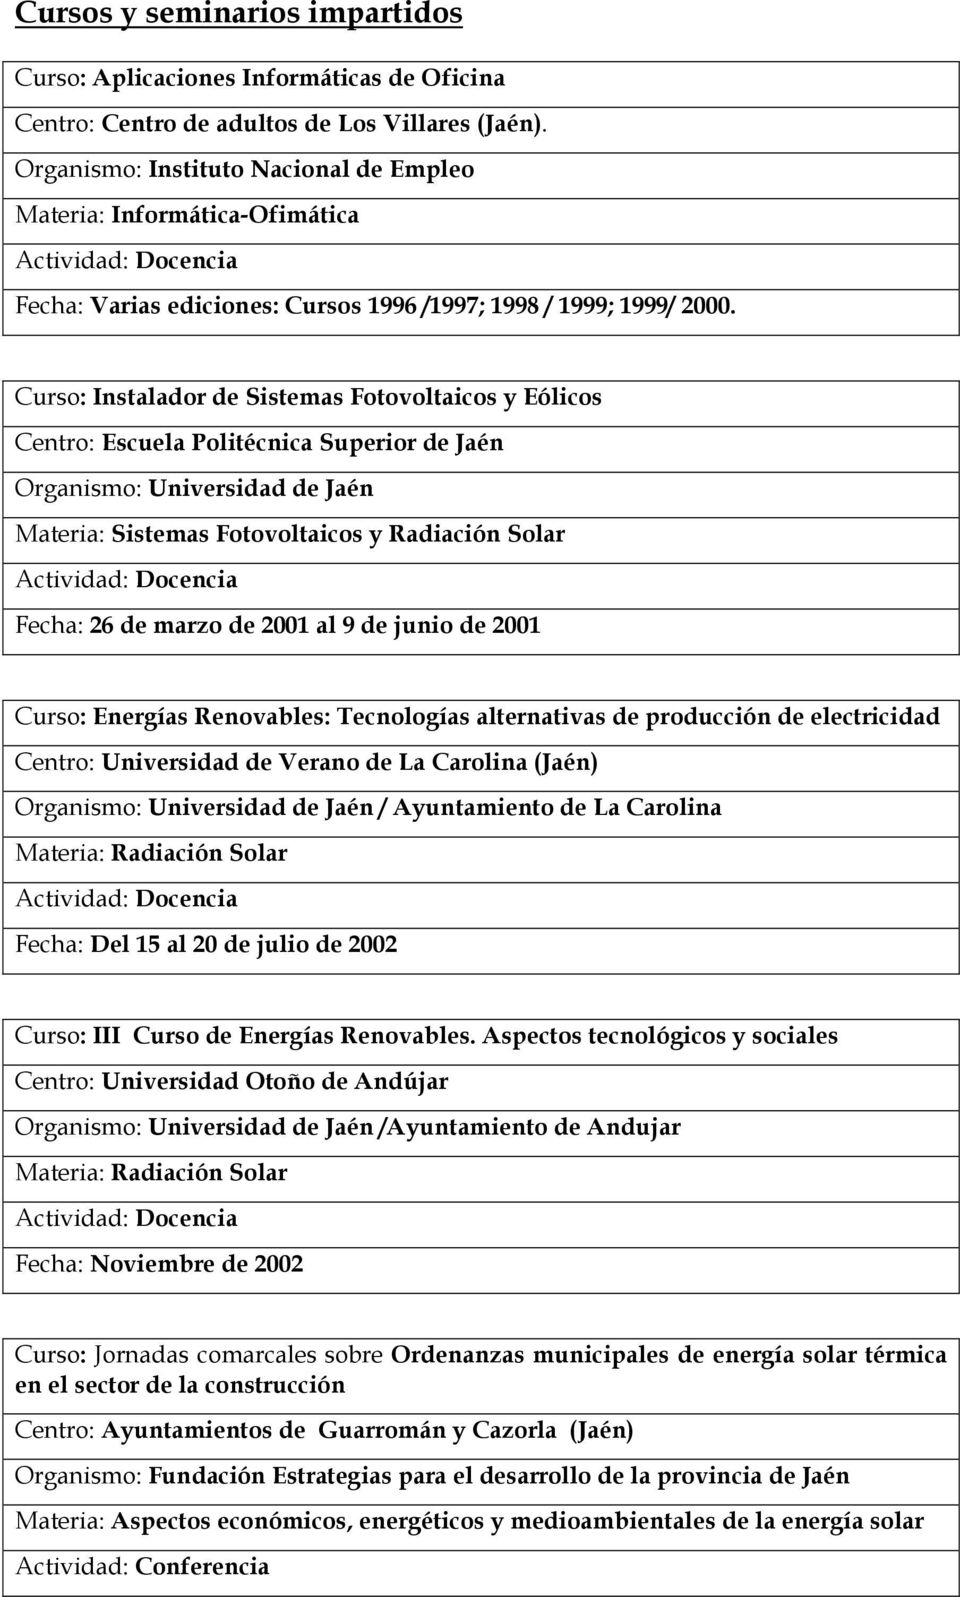 Curso: Instalador de Sistemas Fotovoltaicos y Eólicos Organismo: Universidad de Jaén Materia: Sistemas Fotovoltaicos y Radiación Solar Fecha: 26 de marzo de 2001 al 9 de junio de 2001 Curso: Energías